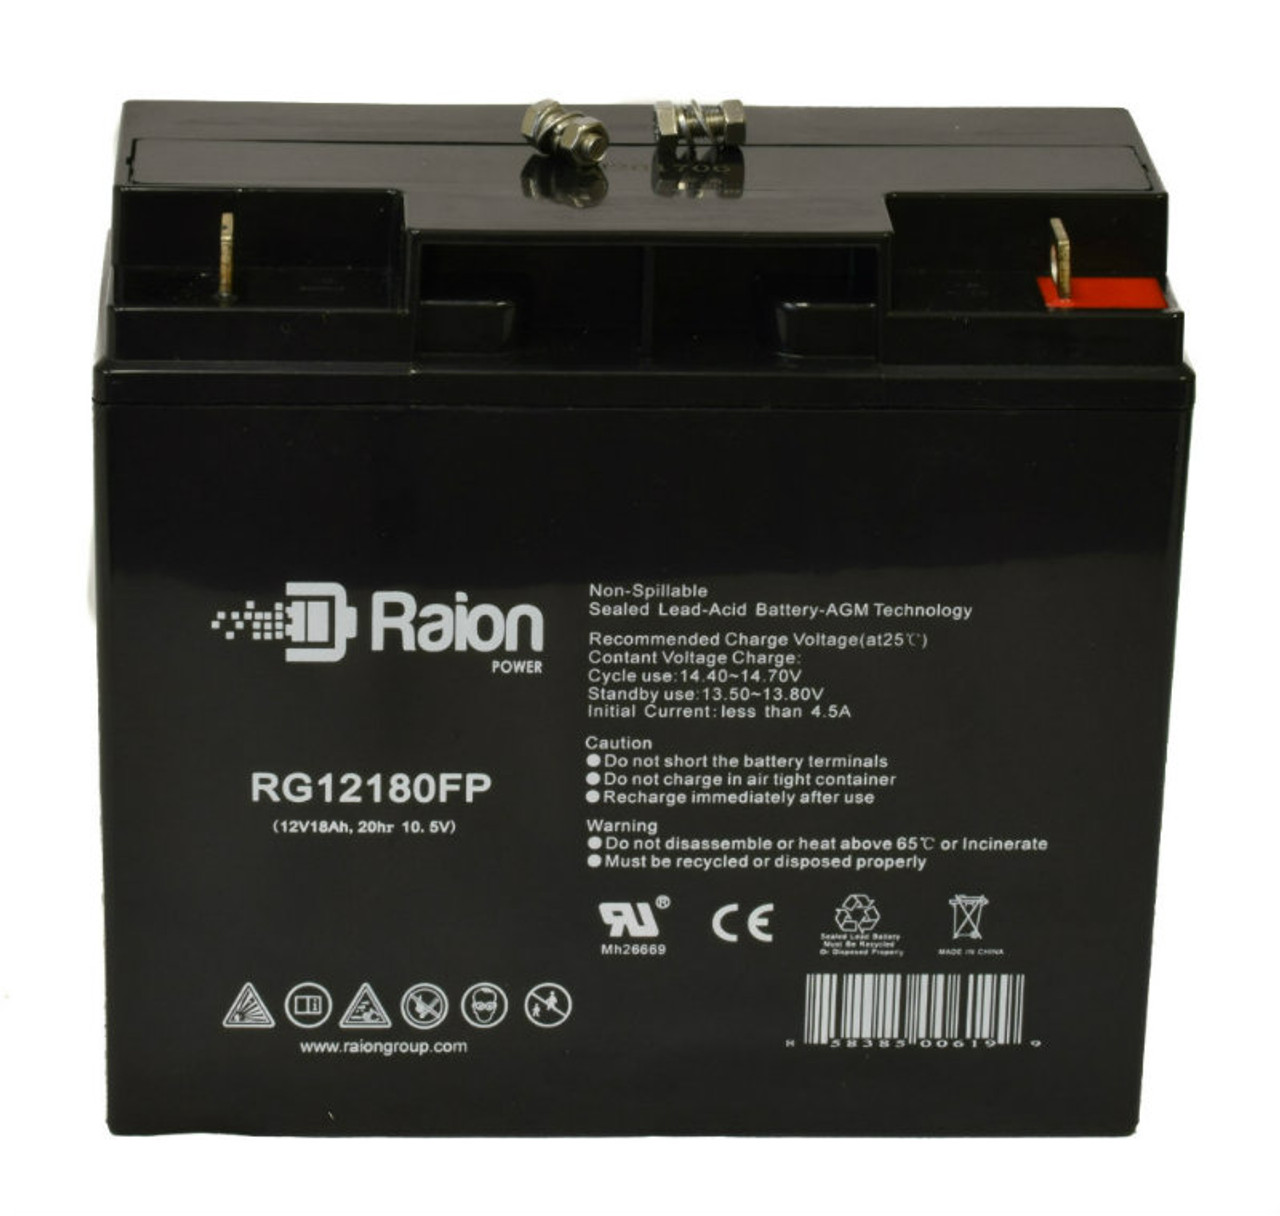 Raion Power RG12180FP 12V 18Ah Lead Acid Battery for Expocell P212/200